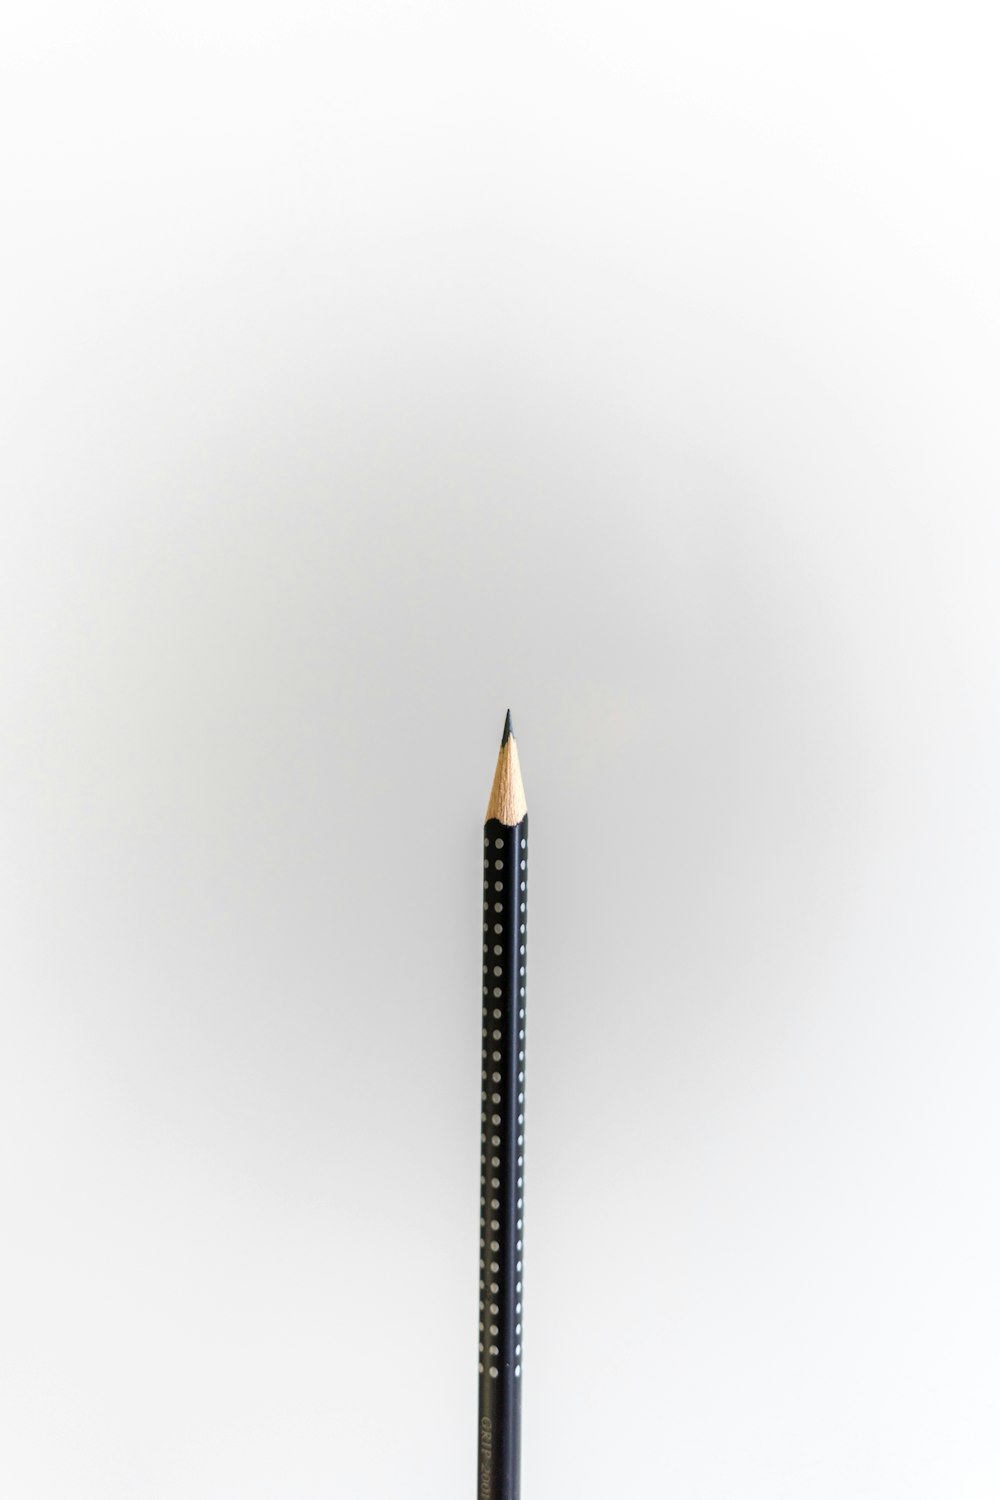 lápis preto na superfície branca